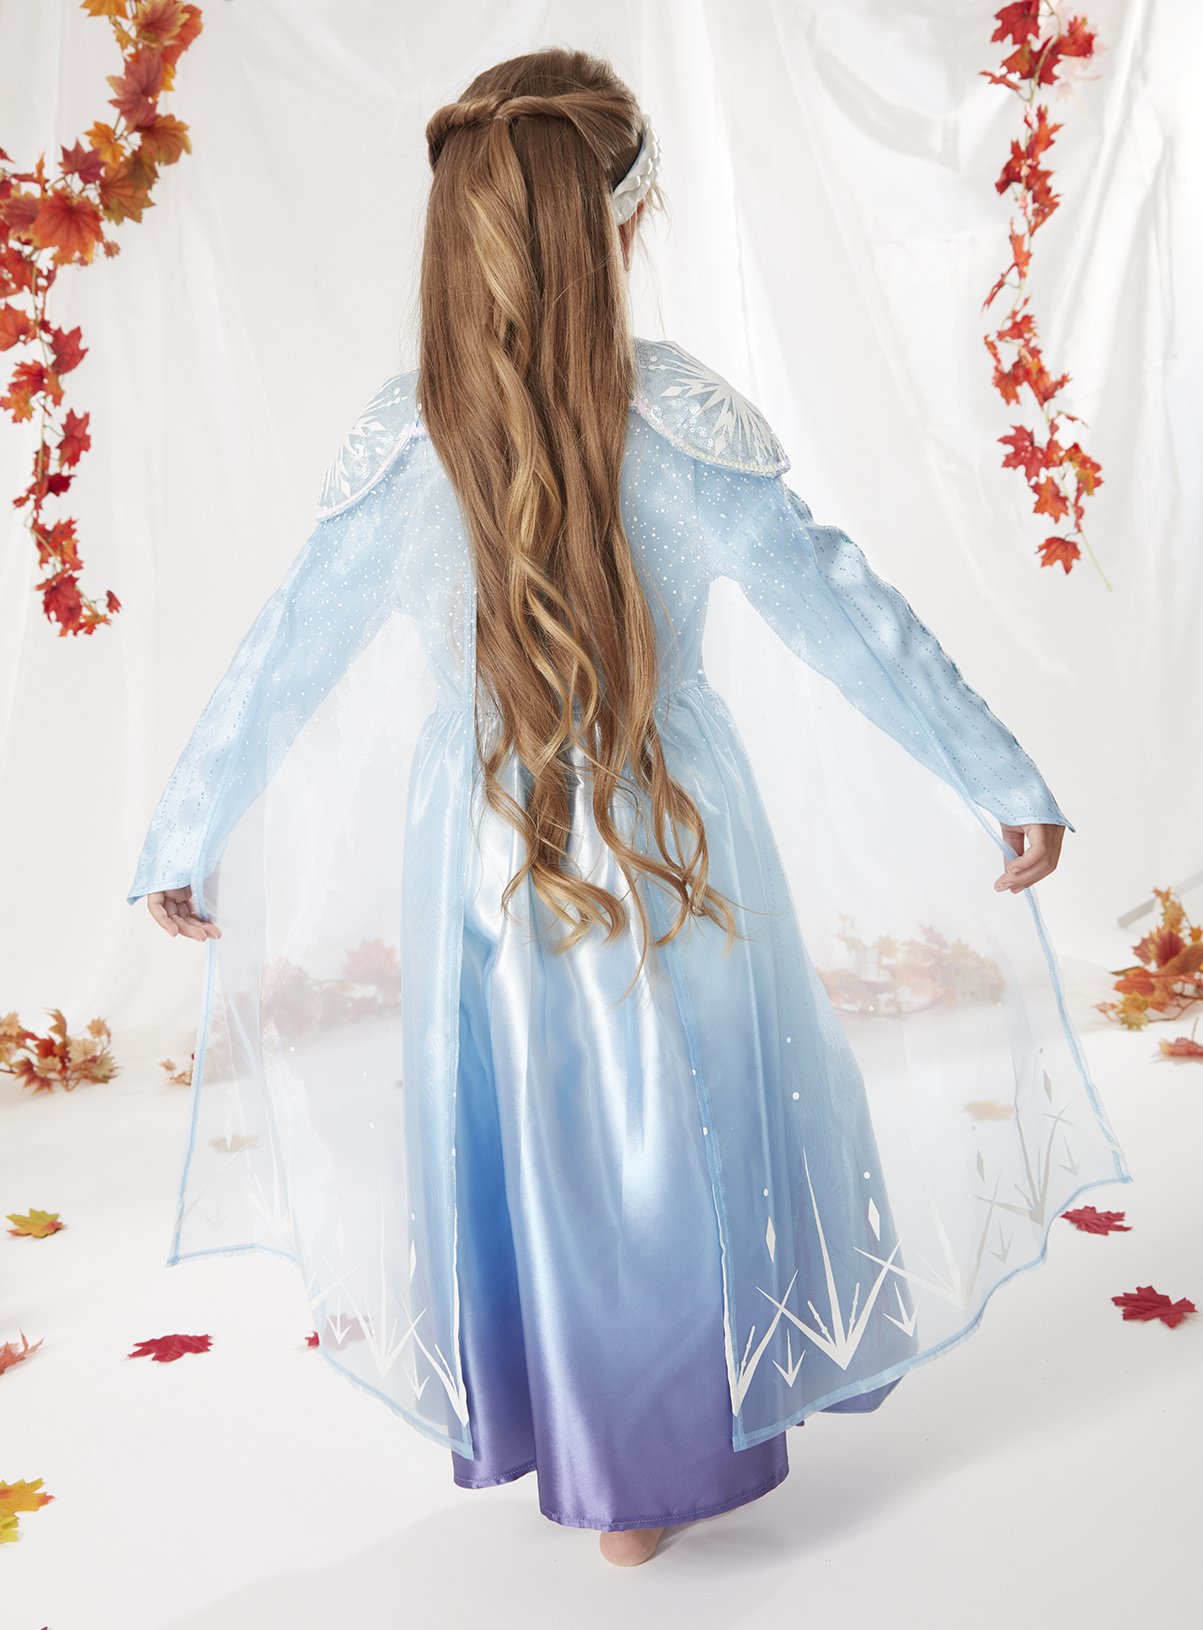 Disney Frozen 2 Elsa Blue Costume Review